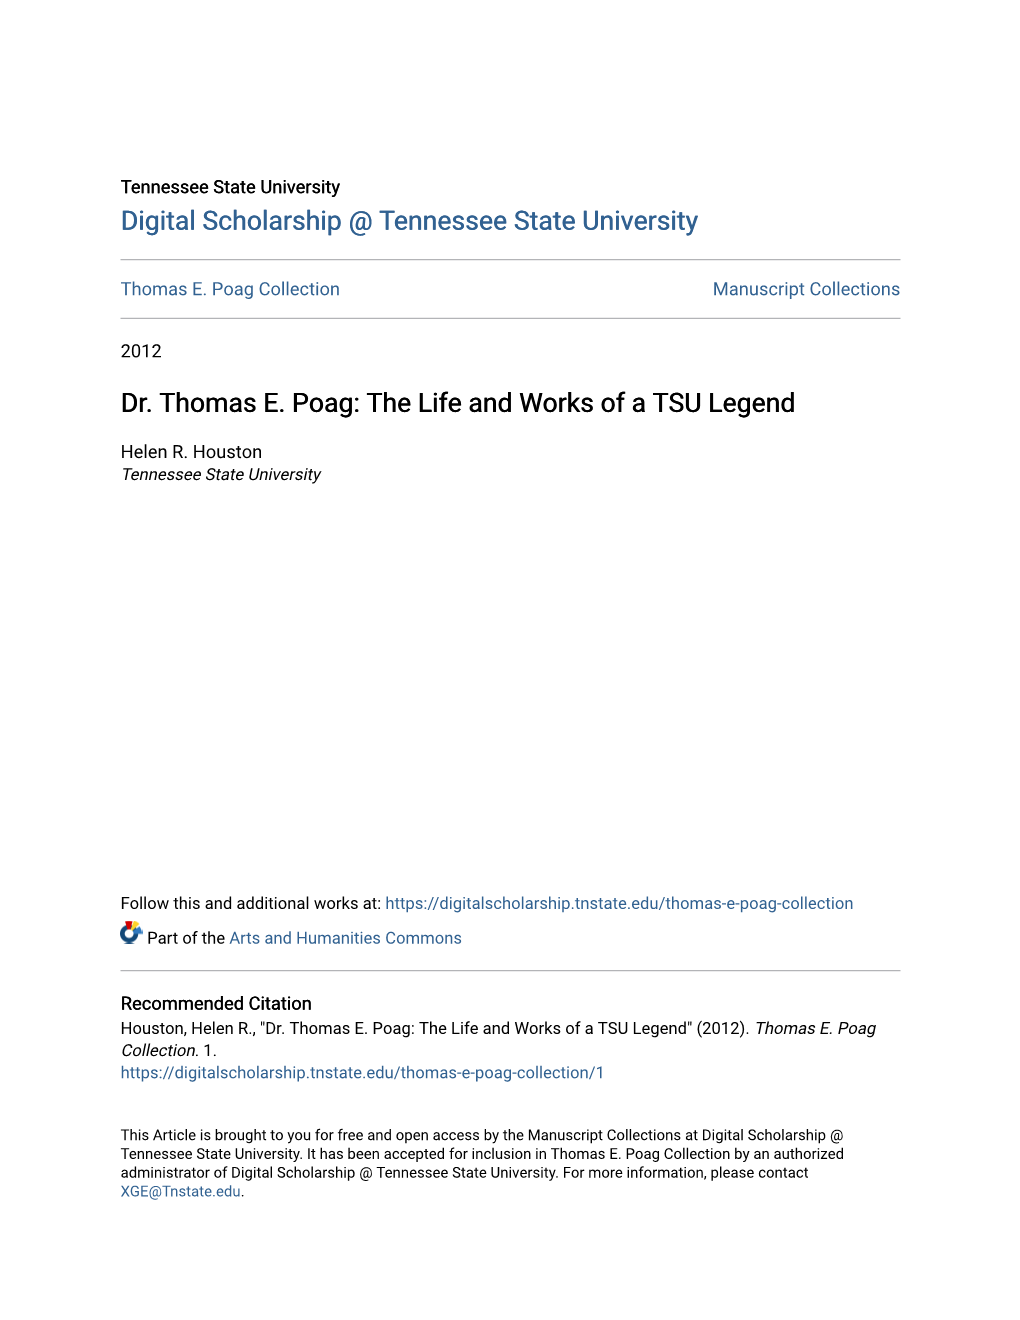 Dr. Thomas E. Poag: the Life and Works of a TSU Legend